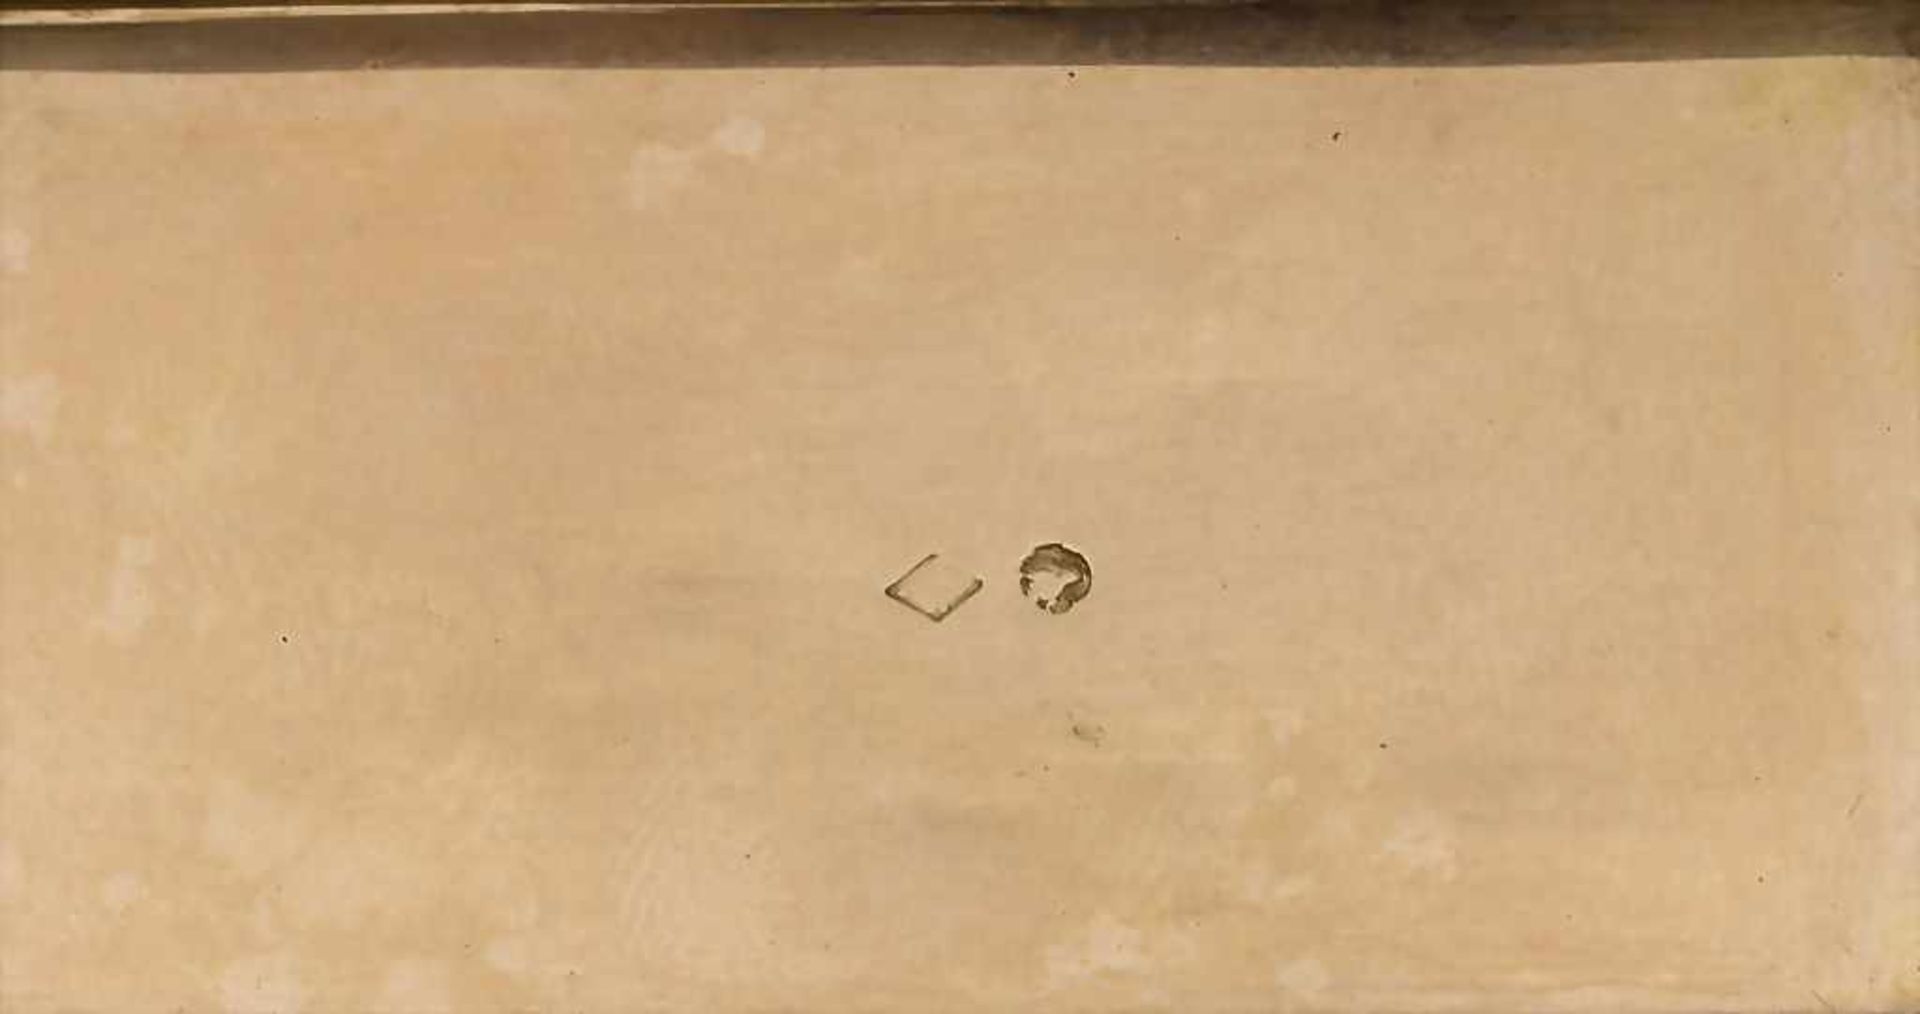 Tabatiere / A tobacco tin, Paris, 1819-1839Material: GG 18 Kt 750/000, Beschaumarken, Goldmarke, - Image 3 of 3